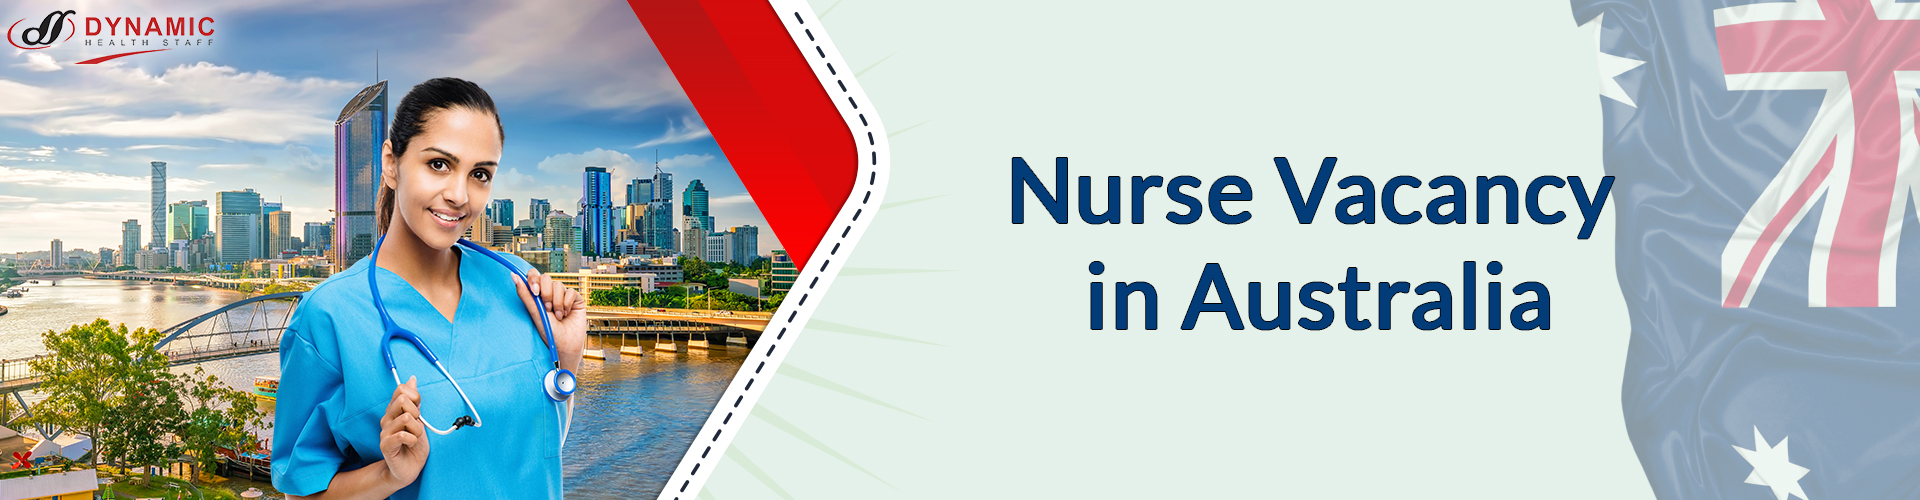 Nurse Vacancy in Australia